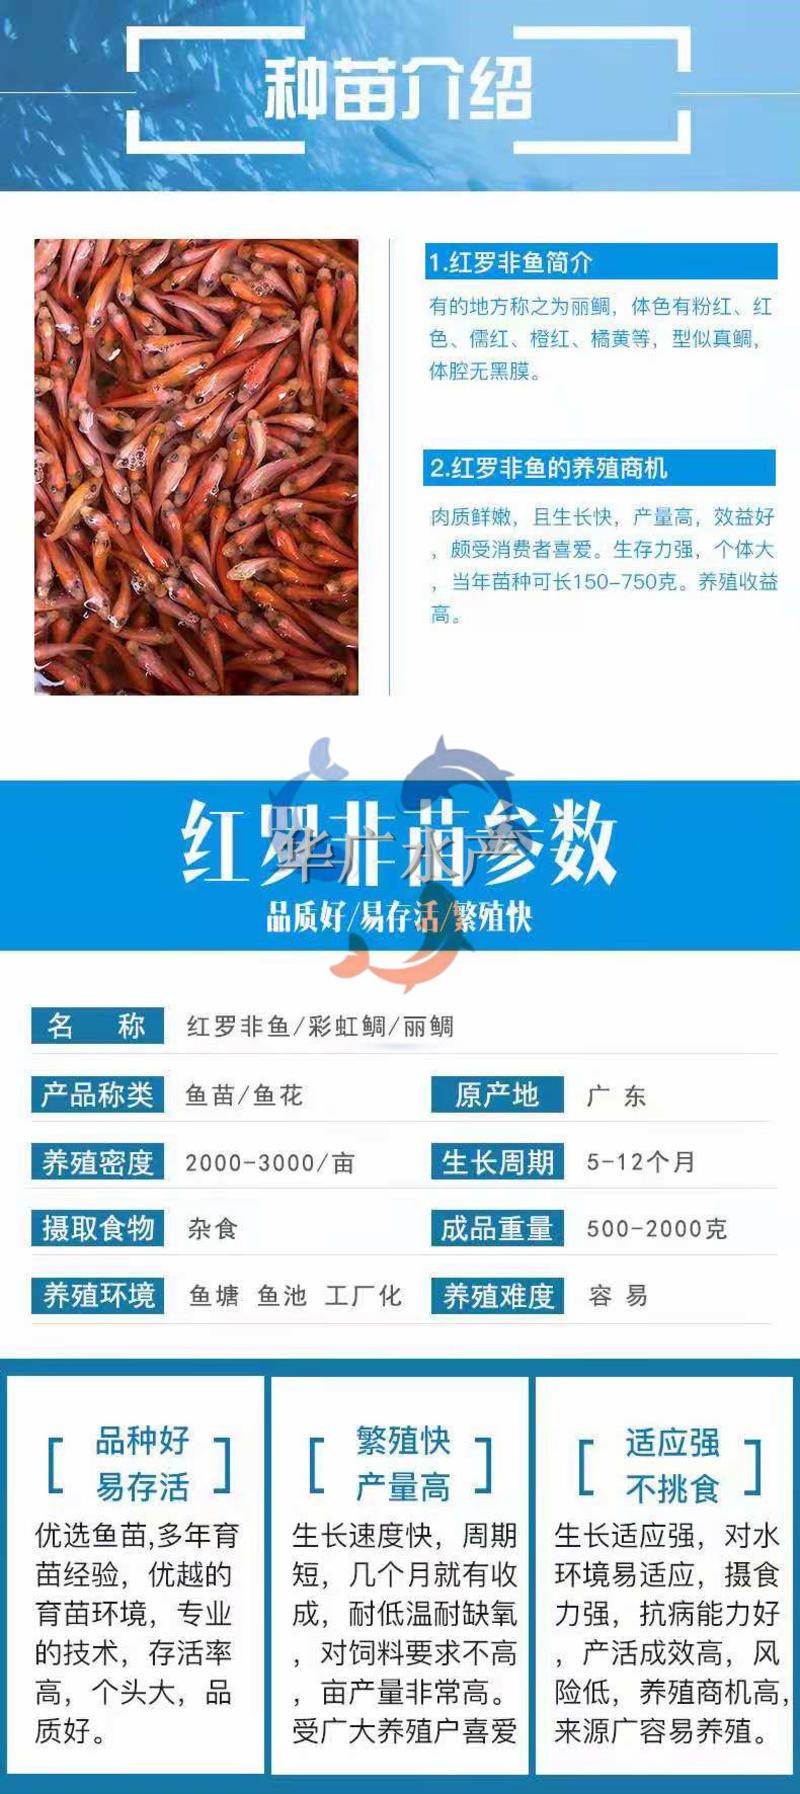 华广水产养殖场观赏红罗非红罗非鱼苗红福寿鱼供应